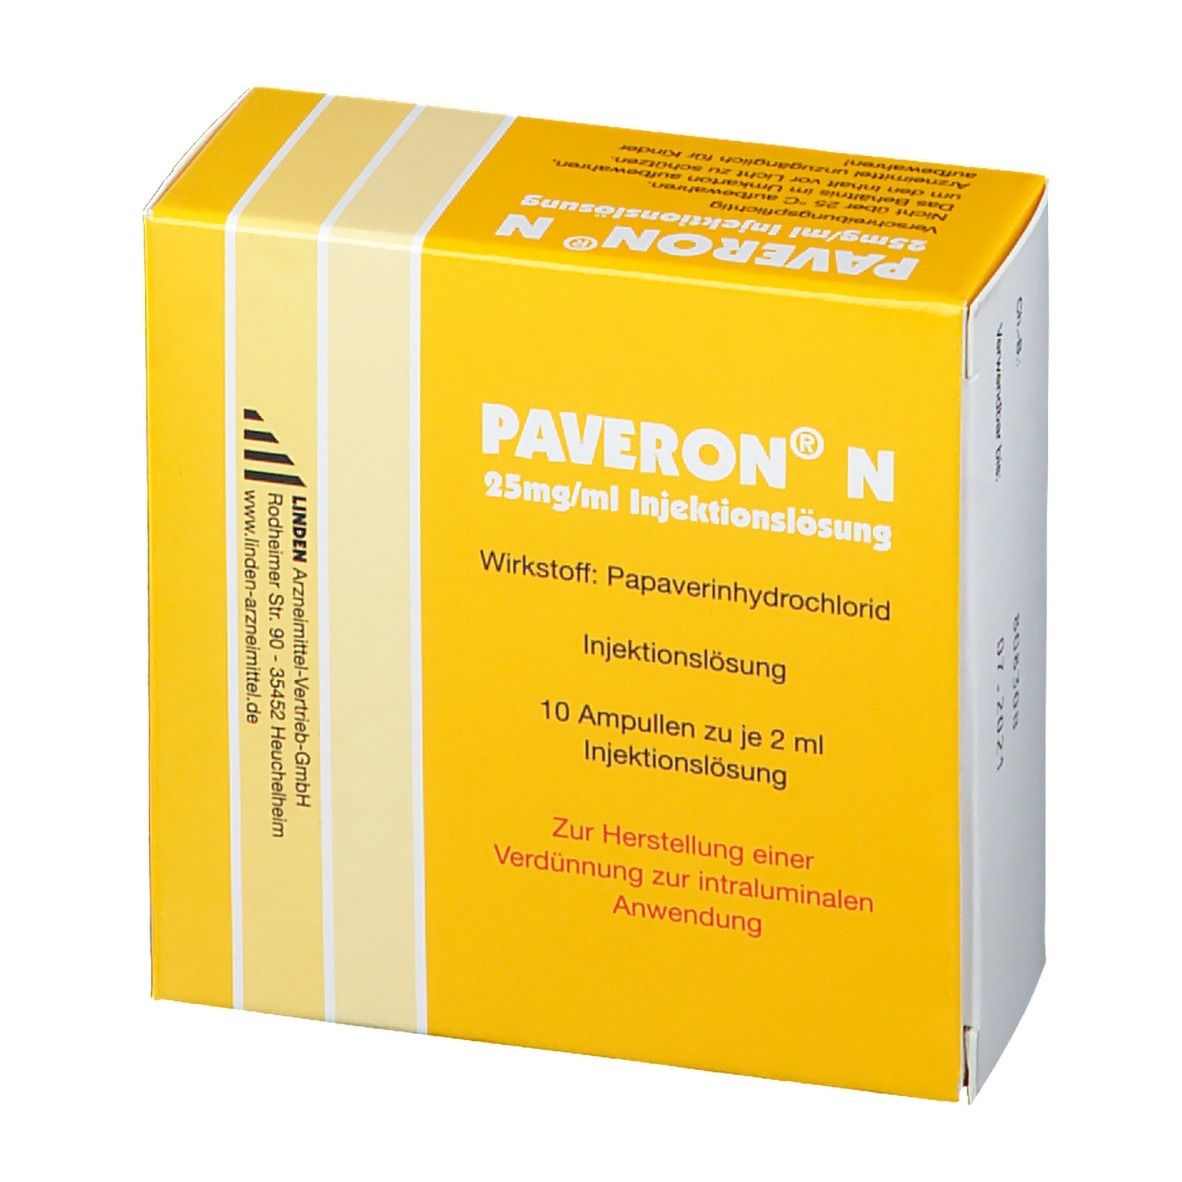 PAVERON® N 25 mg/ml